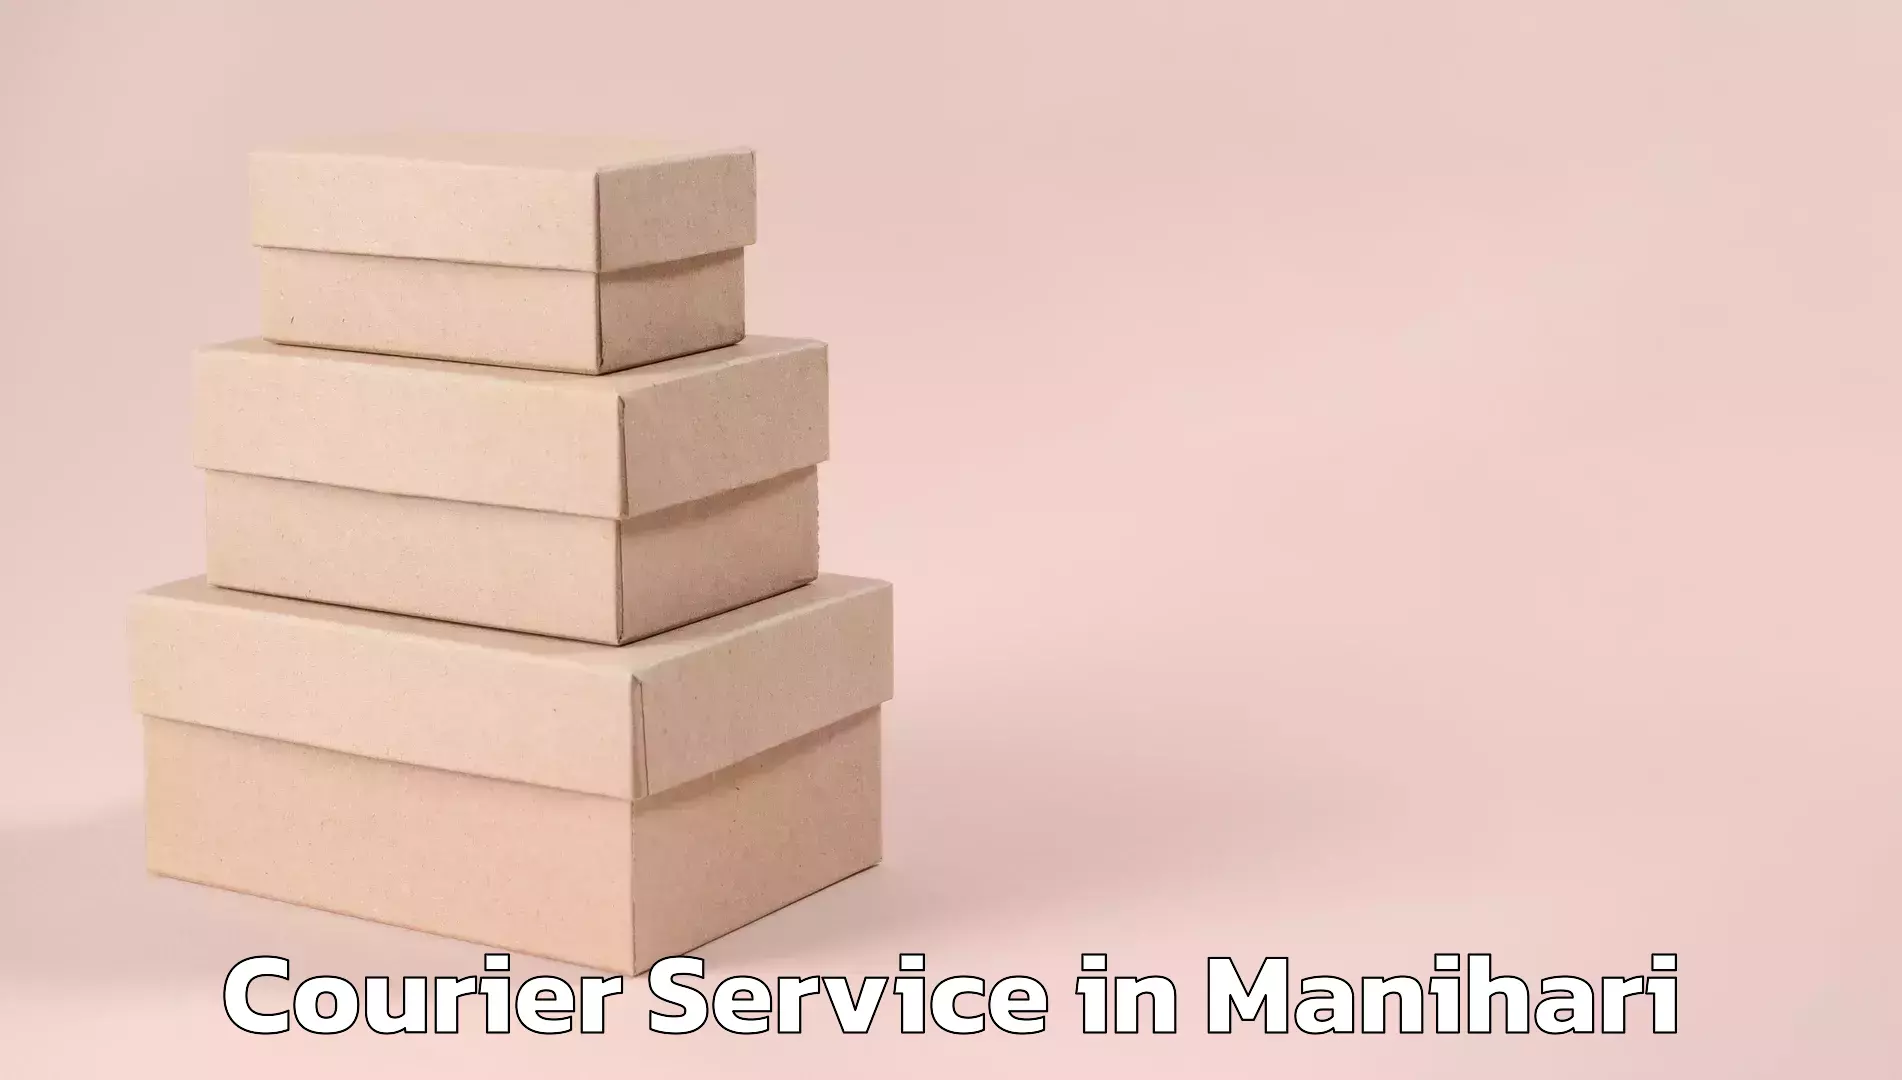 User-friendly delivery service in Manihari